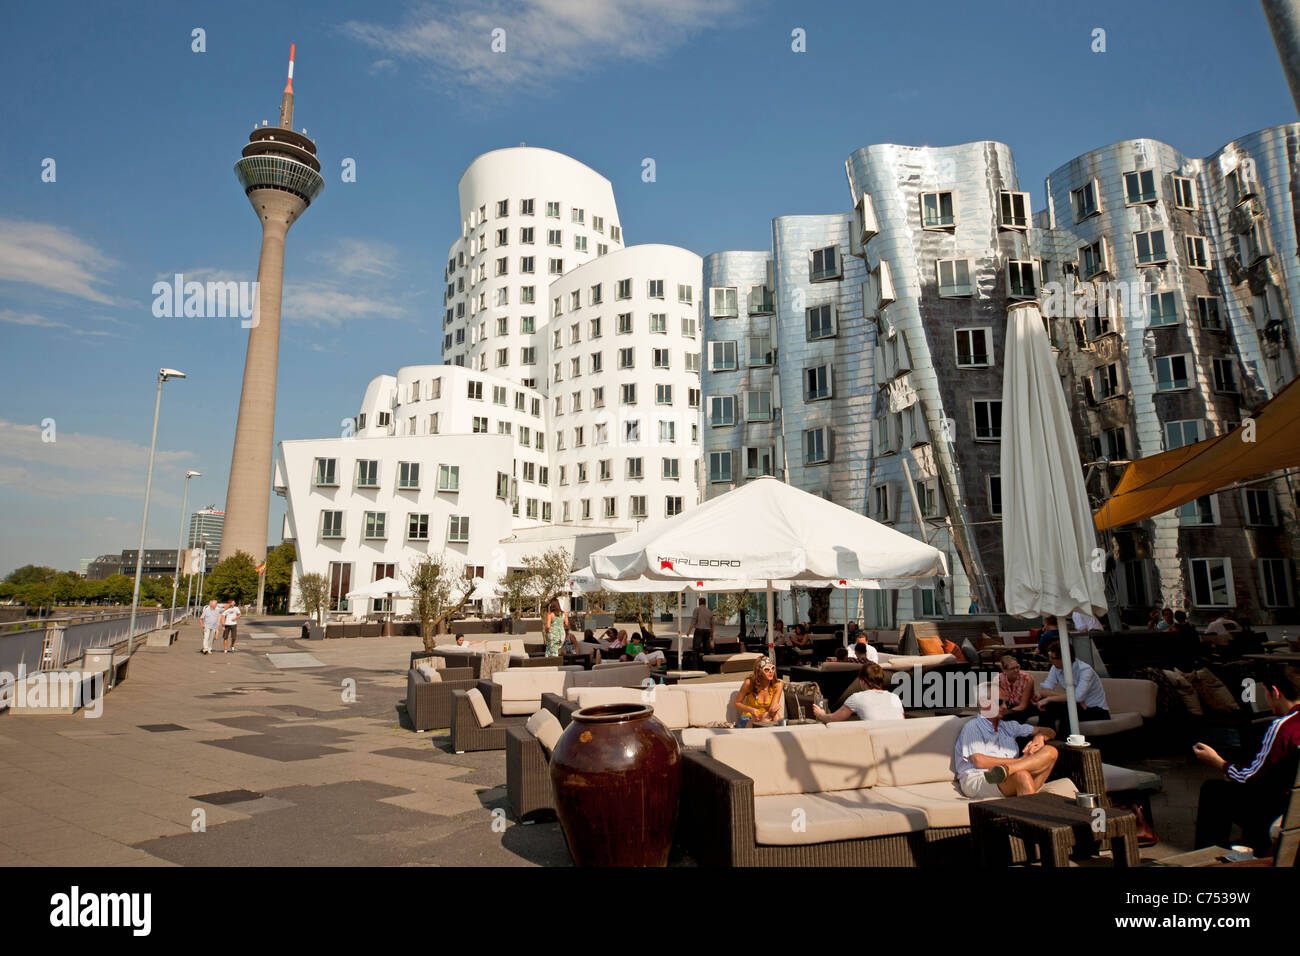 Der Neue Zollhof Architekten Gehry des Medienhafens und Fernmeldeturm Rheinturm in Düsseldorf, Stockfoto